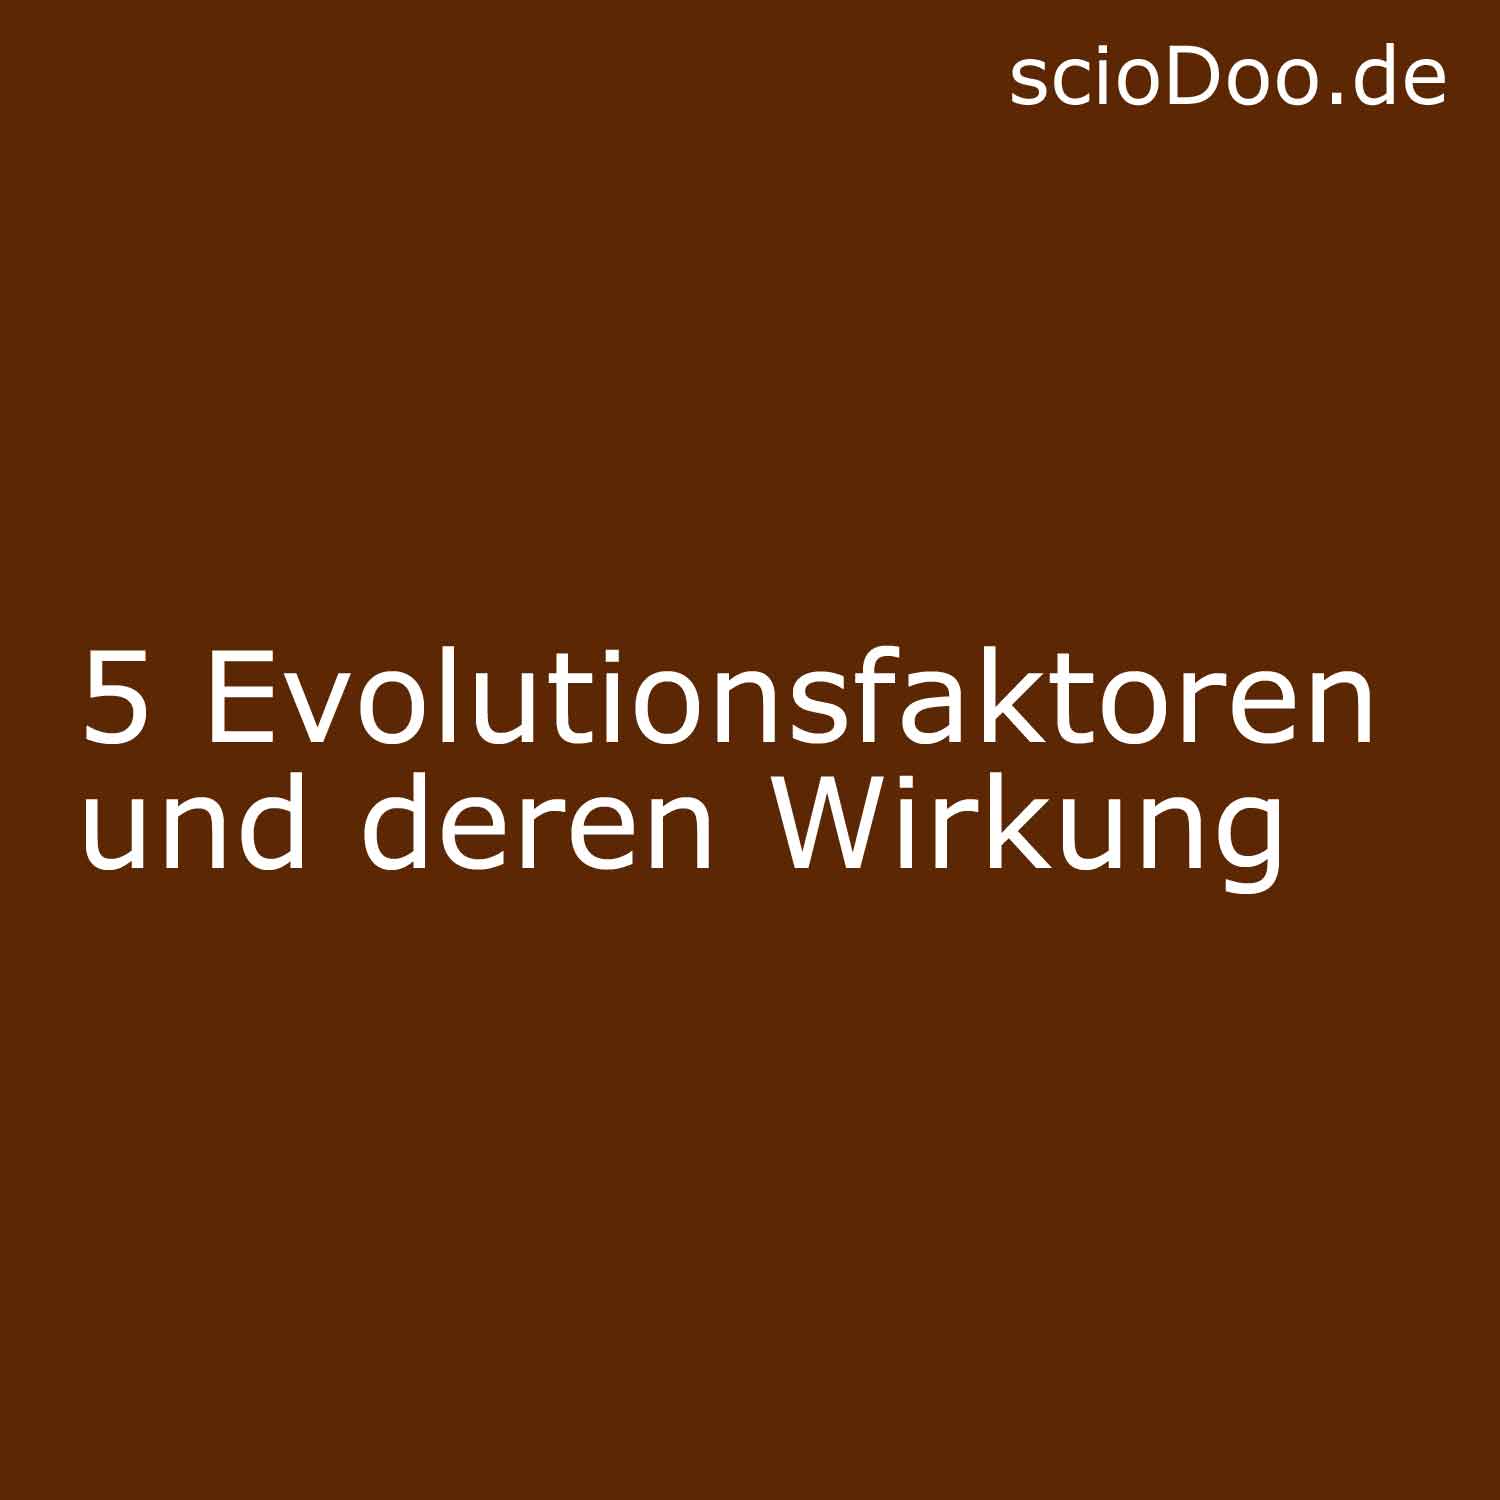 5 Evolutionsfaktoren und deren Wirkung